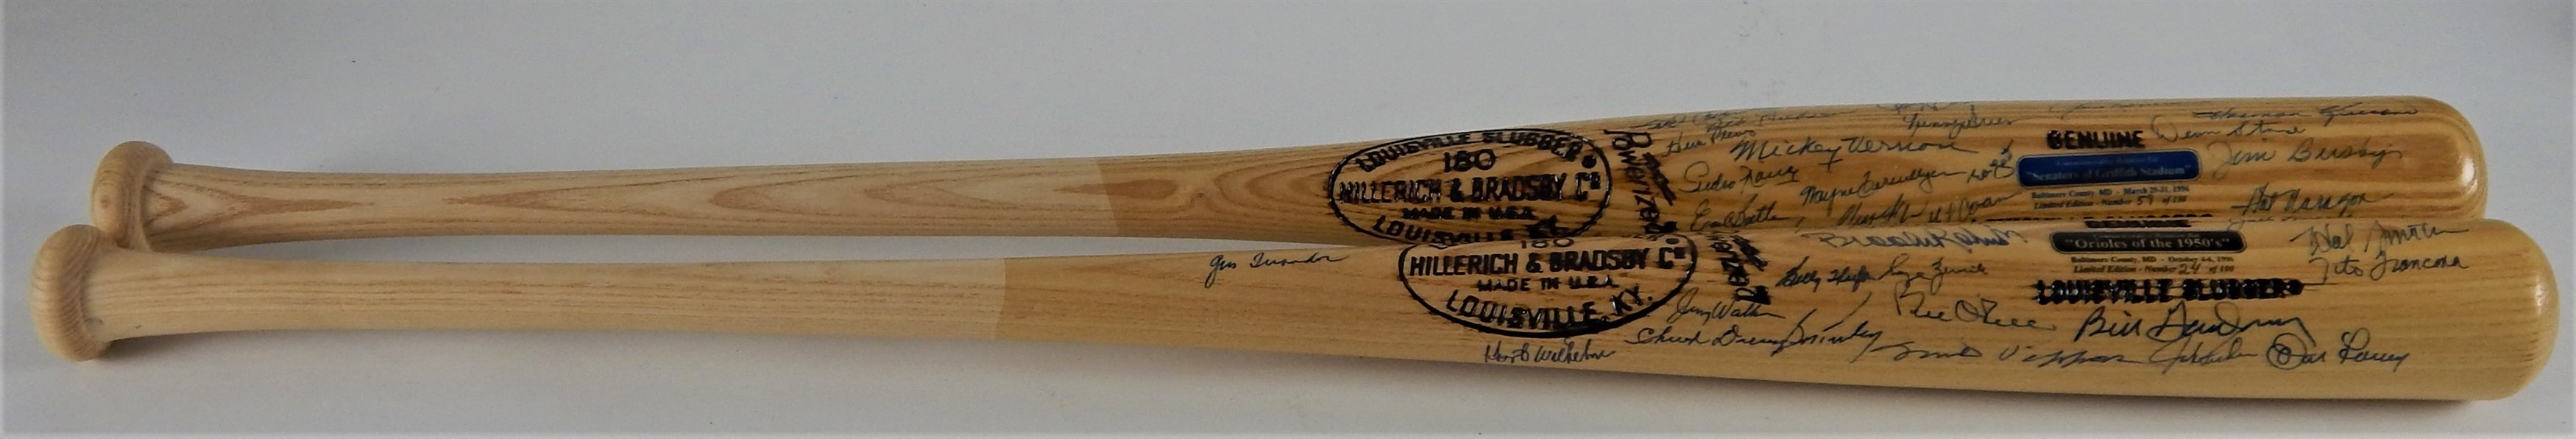 Baseball Autographs - Washington Senators & Baltimore Orioles Old Timers Bats